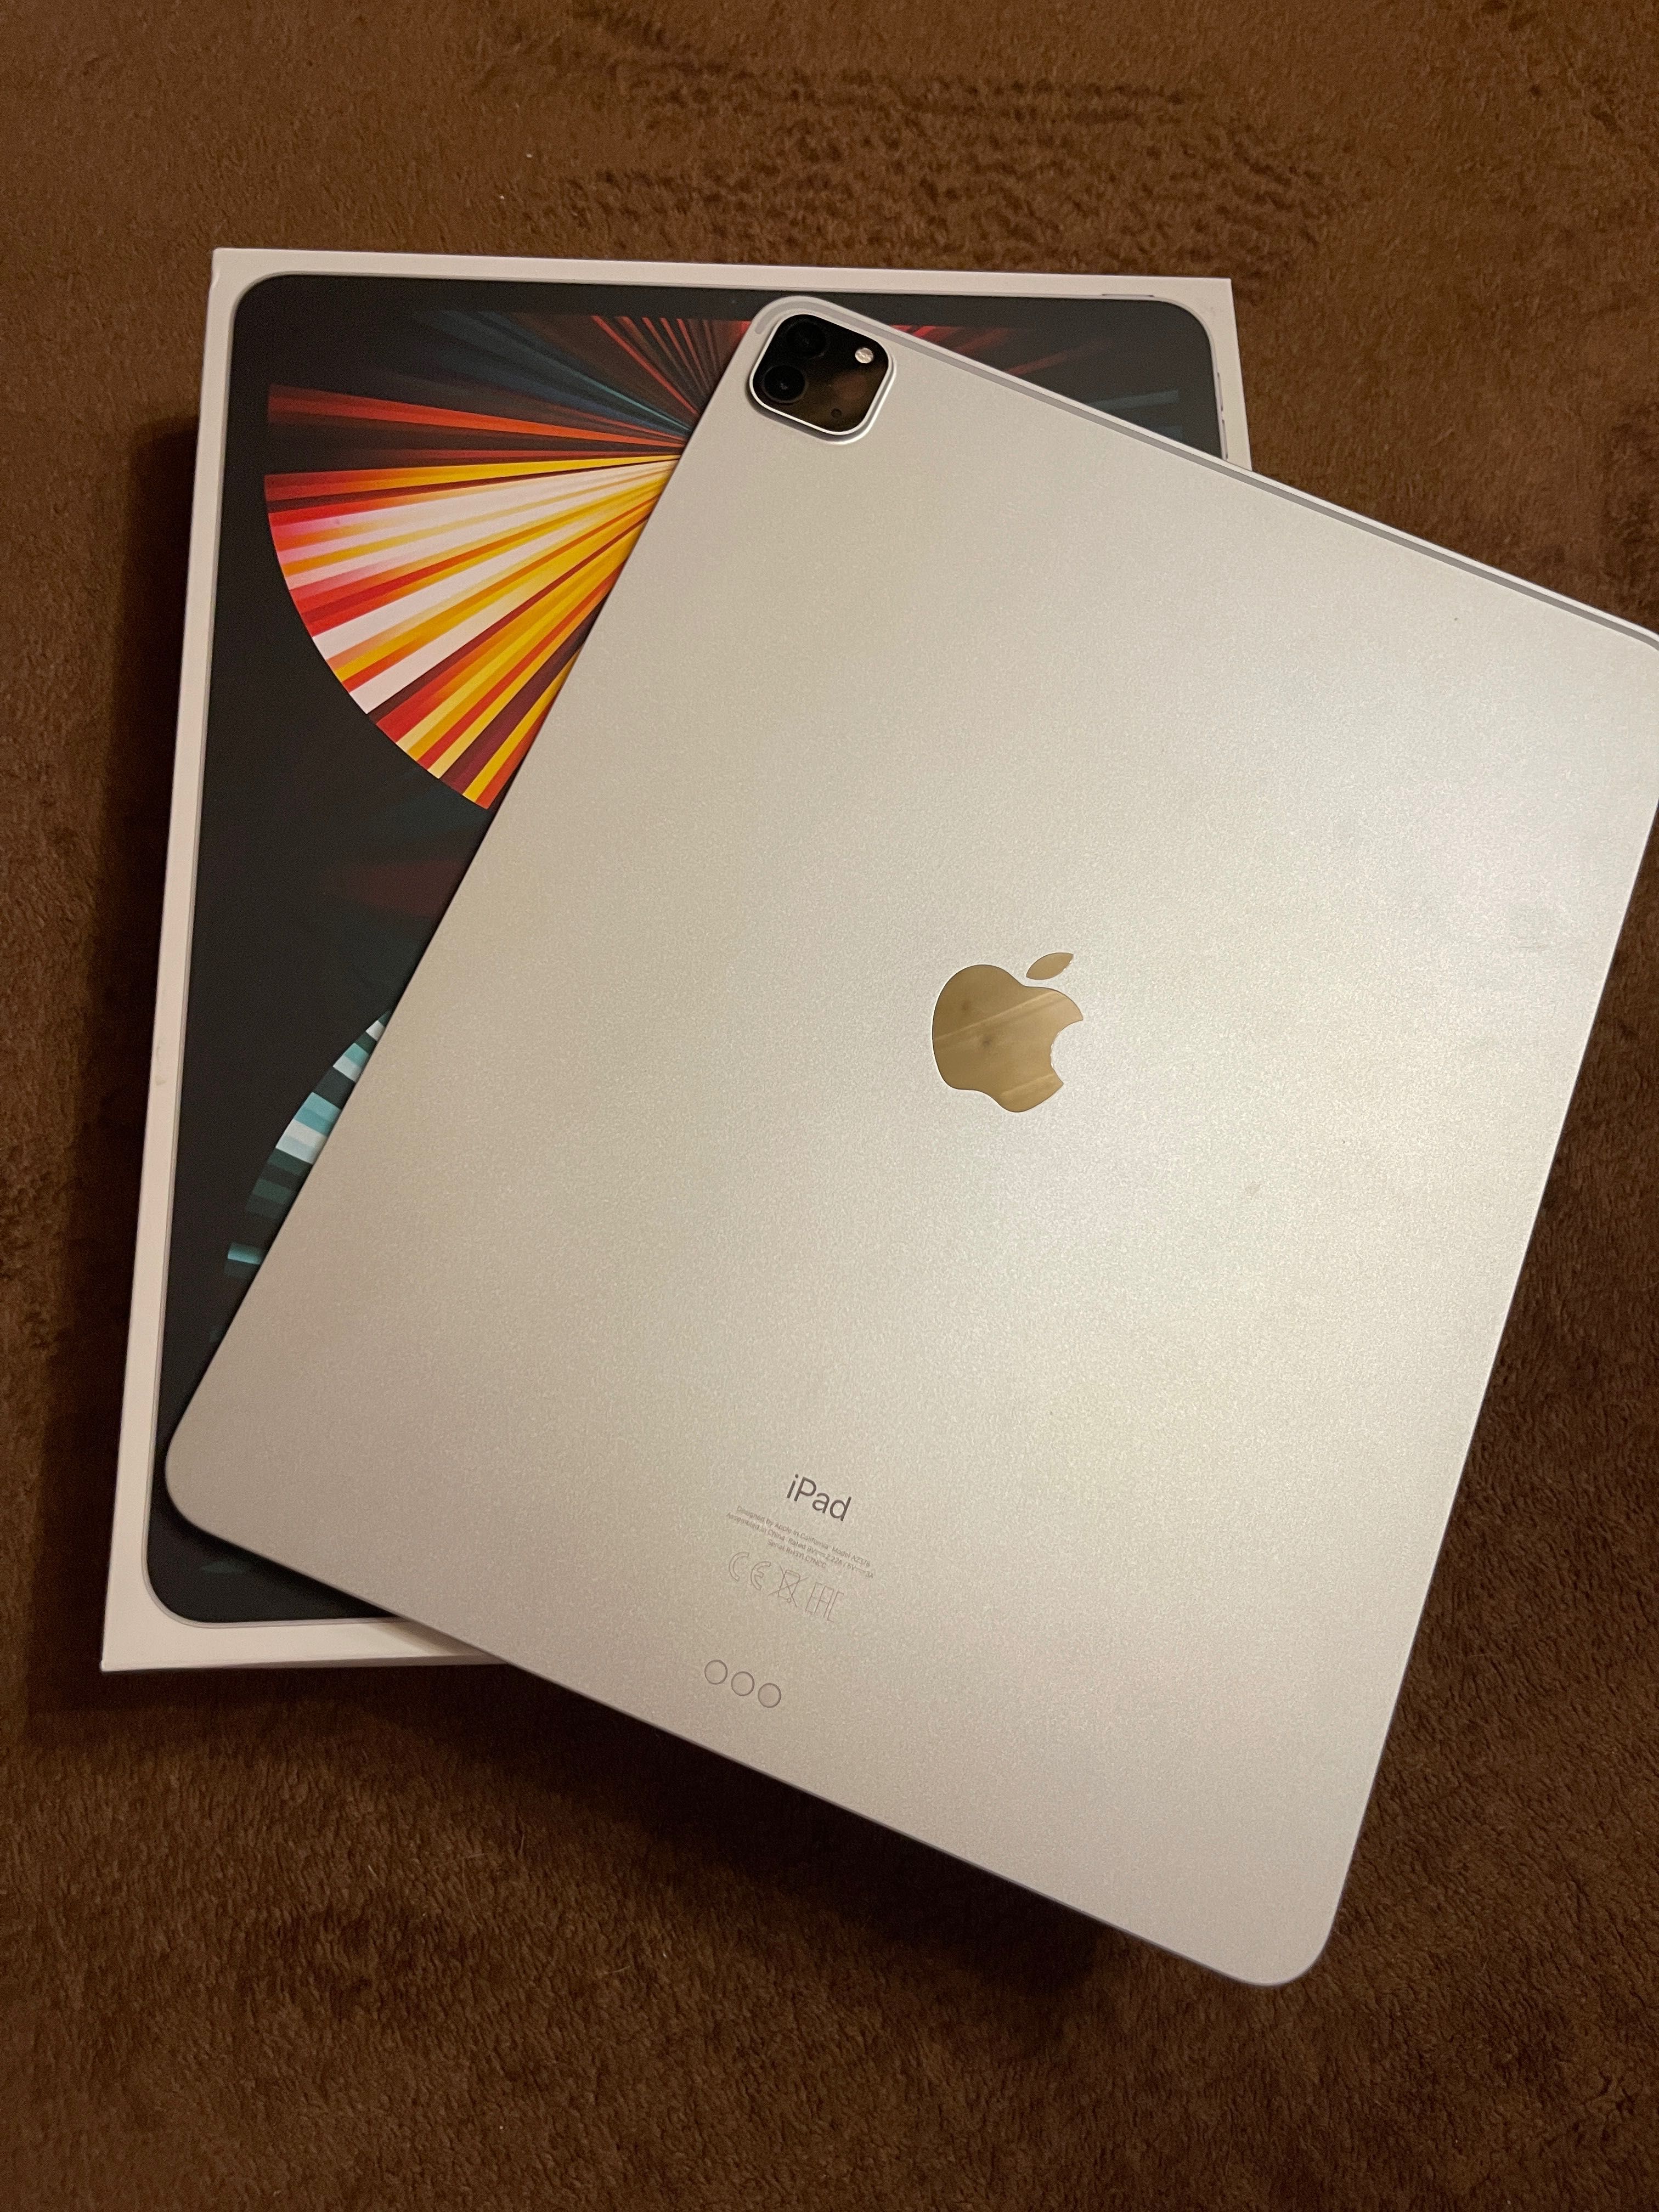 iPad Pro 12.9-inch (5th Generation) Wi-Fi 256GB